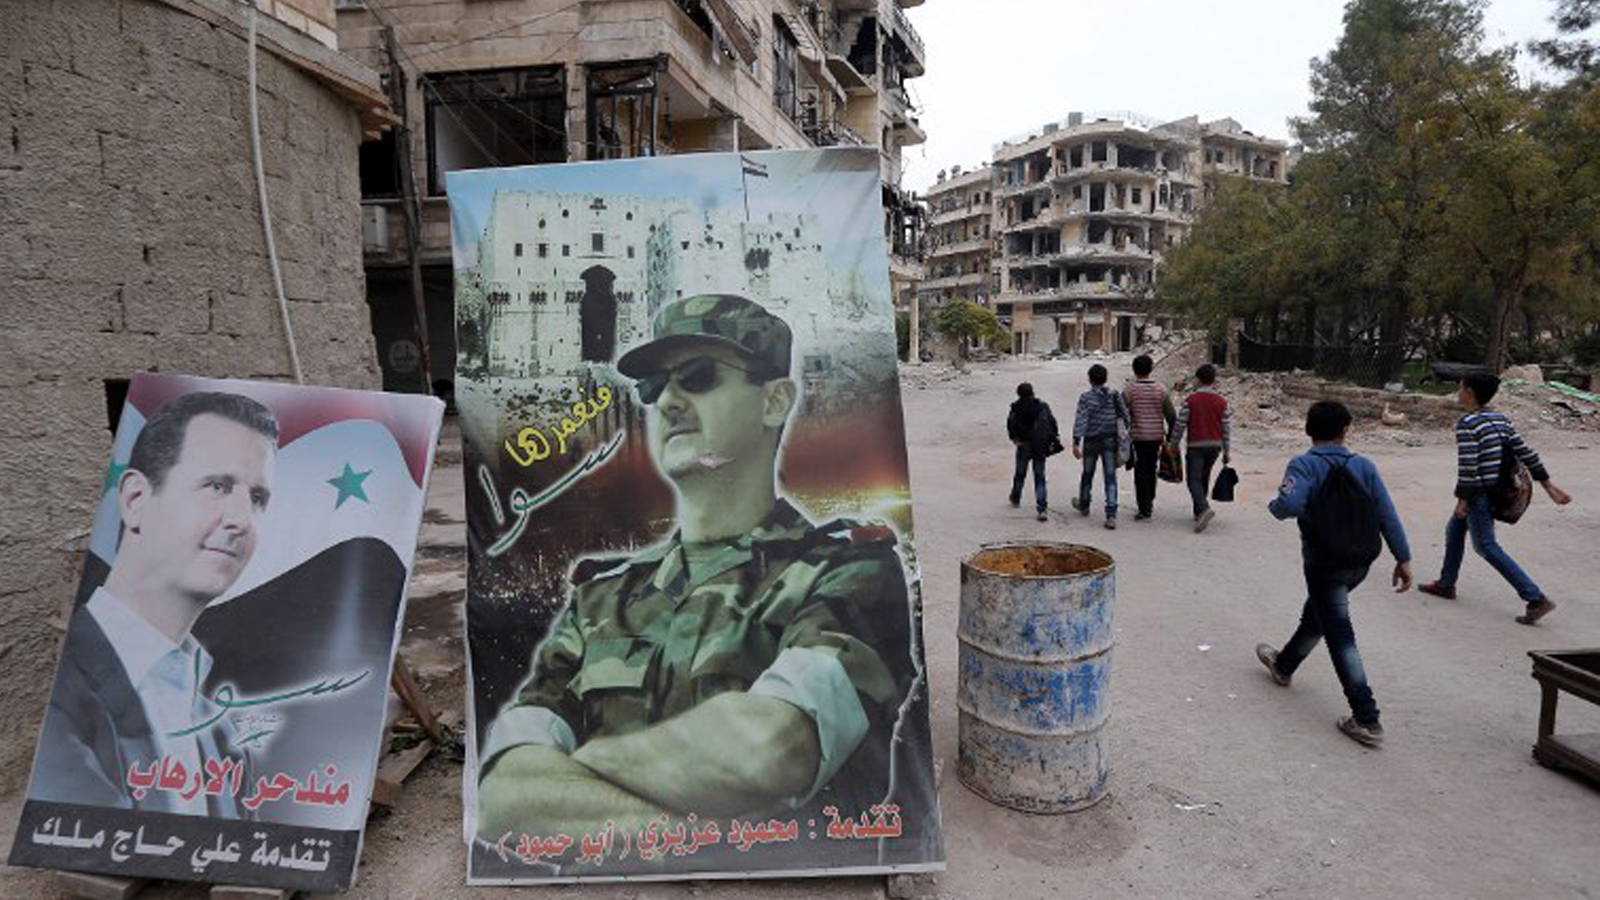 واشنطن : مسؤولو ملف سوريا يتركون مناصبهم تباعا